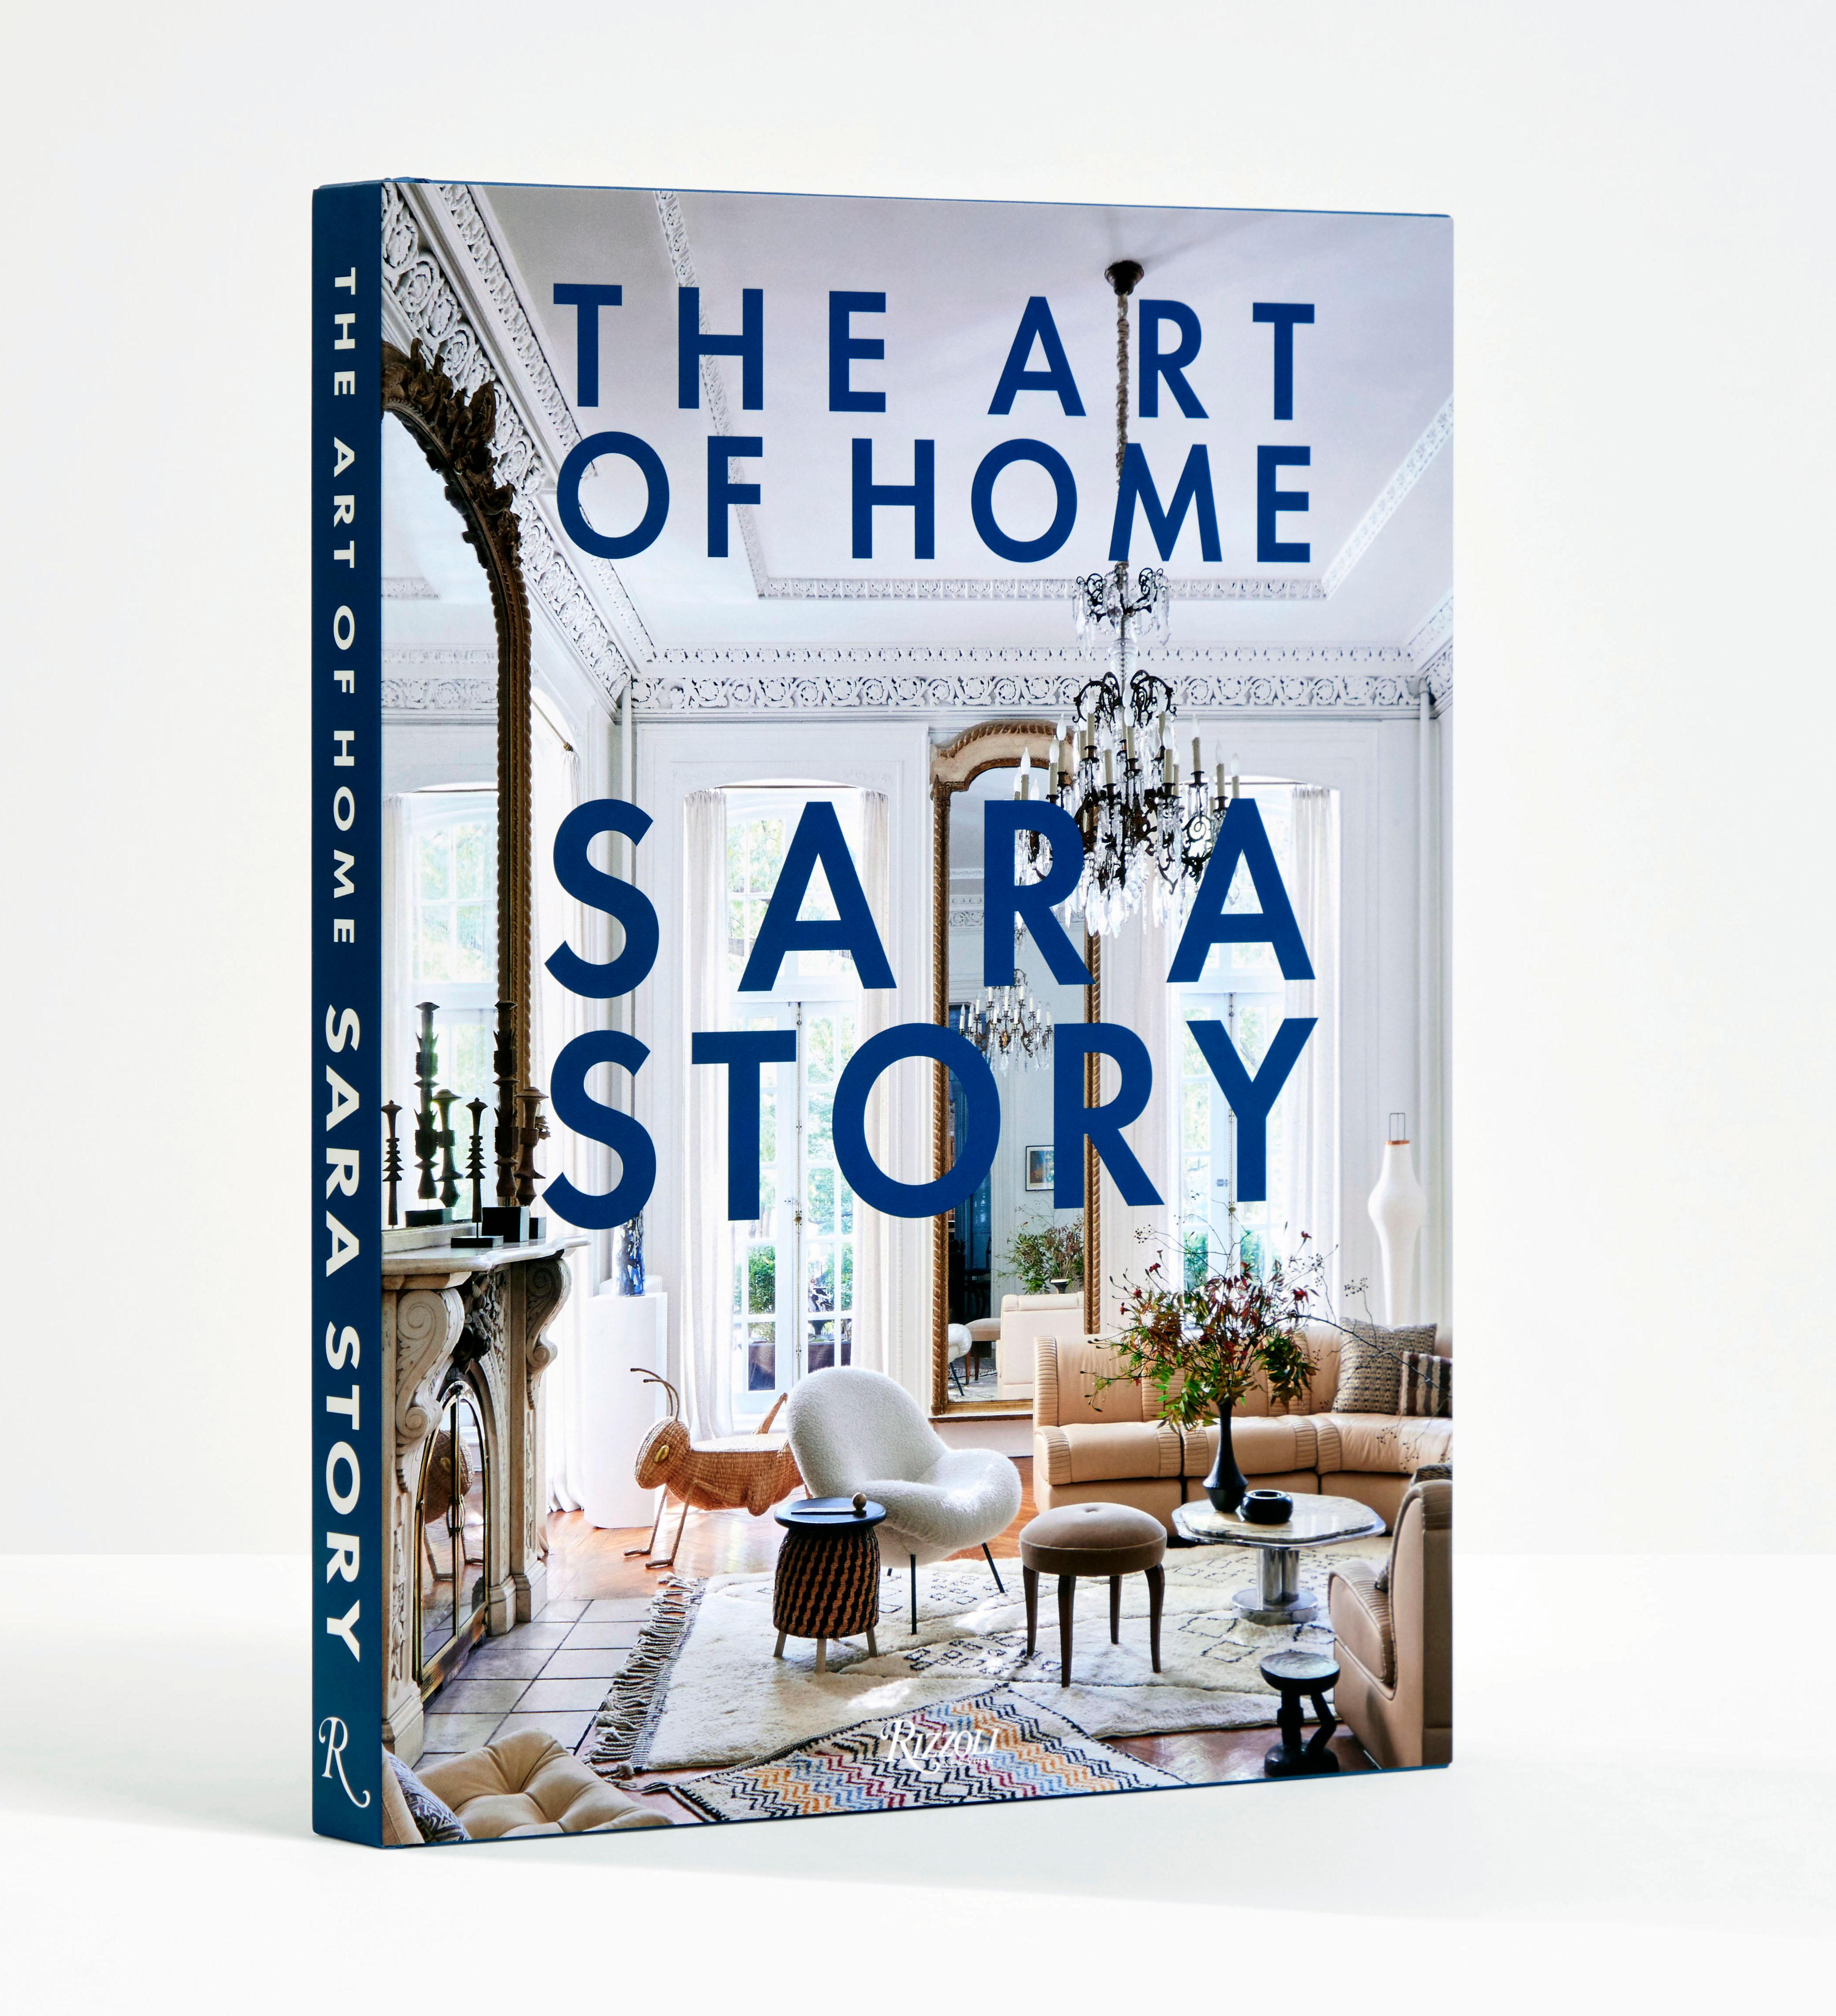 Das erste Buch der Designerin Sara Story, die eine globale Bohème-Sensibilität mit einer Leidenschaft für Kunst verbindet, um schlichte, aber eindrucksvolle Räume zu gestalten, die Stil und Abenteuer miteinander verbinden.

Die aufstrebende